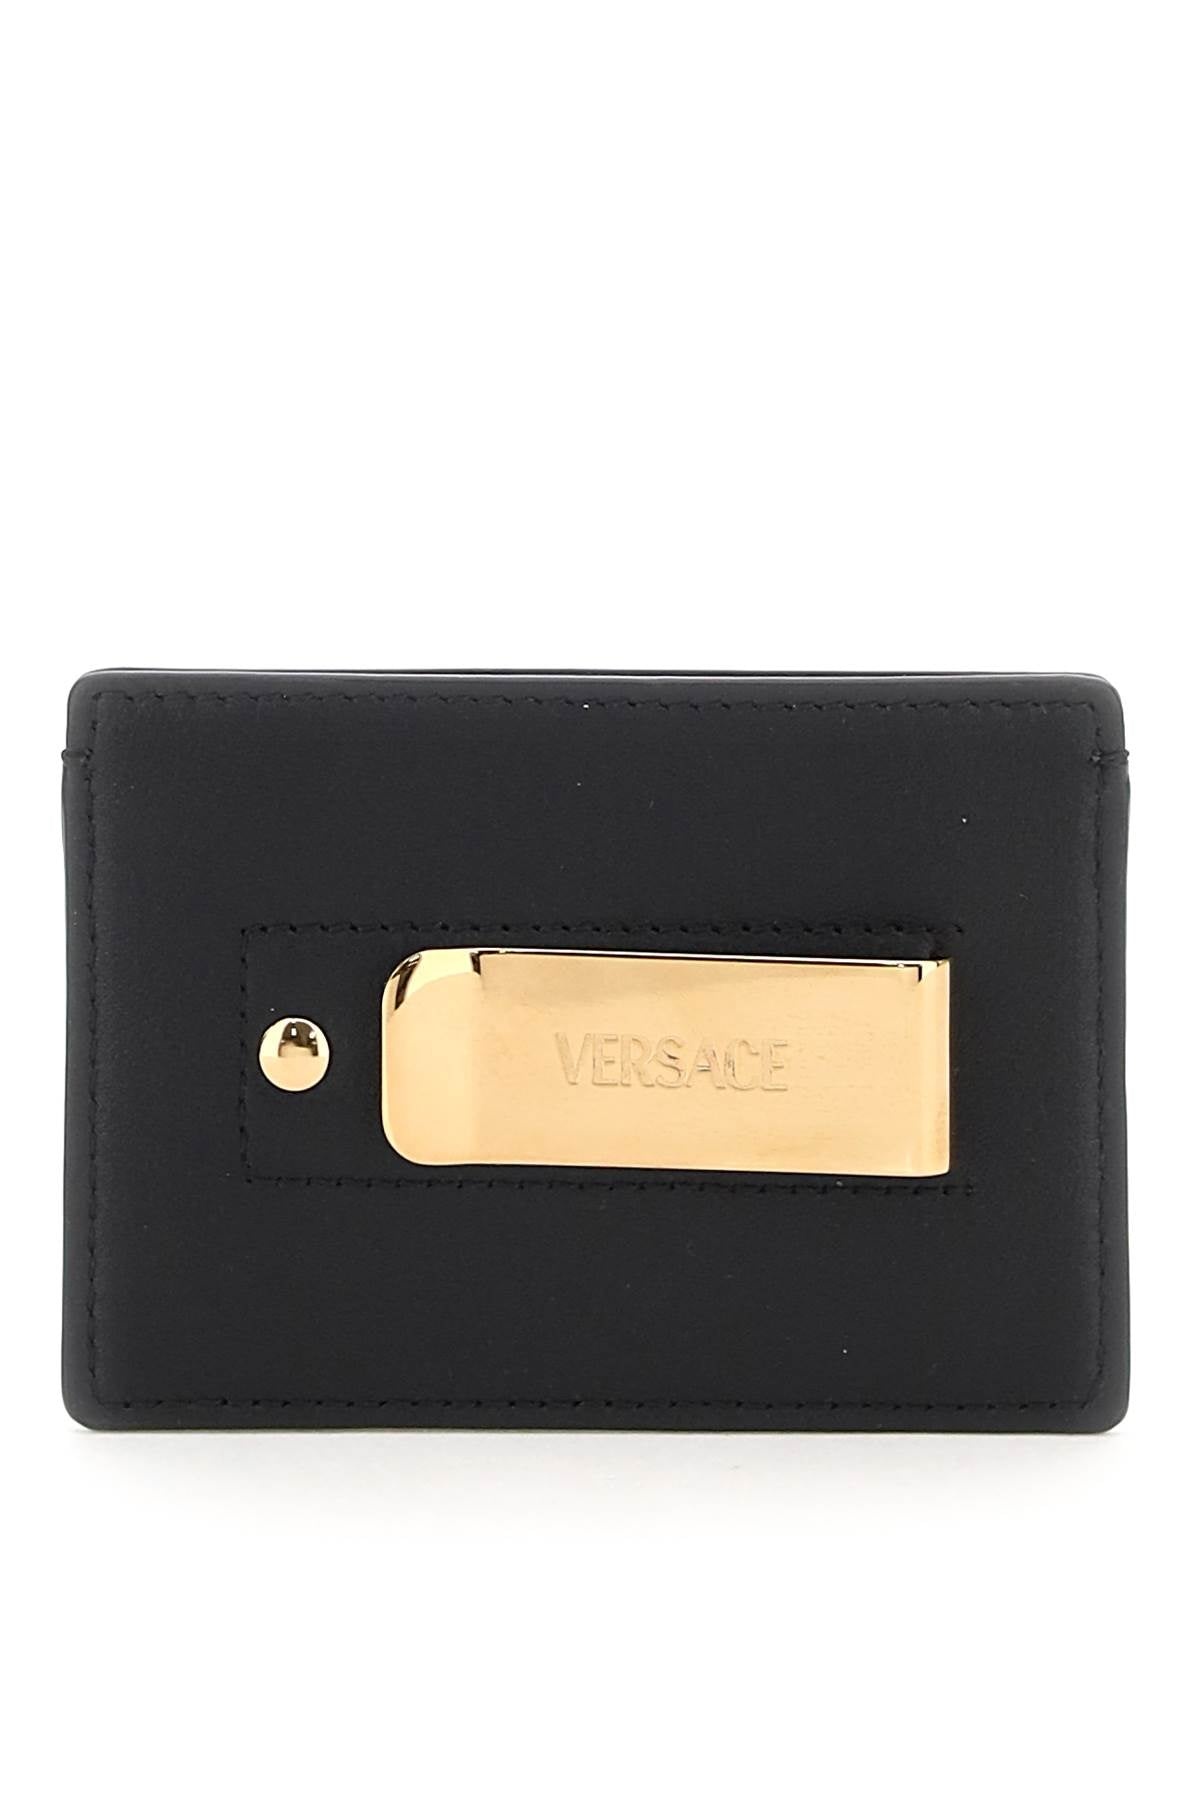 Versace Leather Medusa Cardholder Men - 3